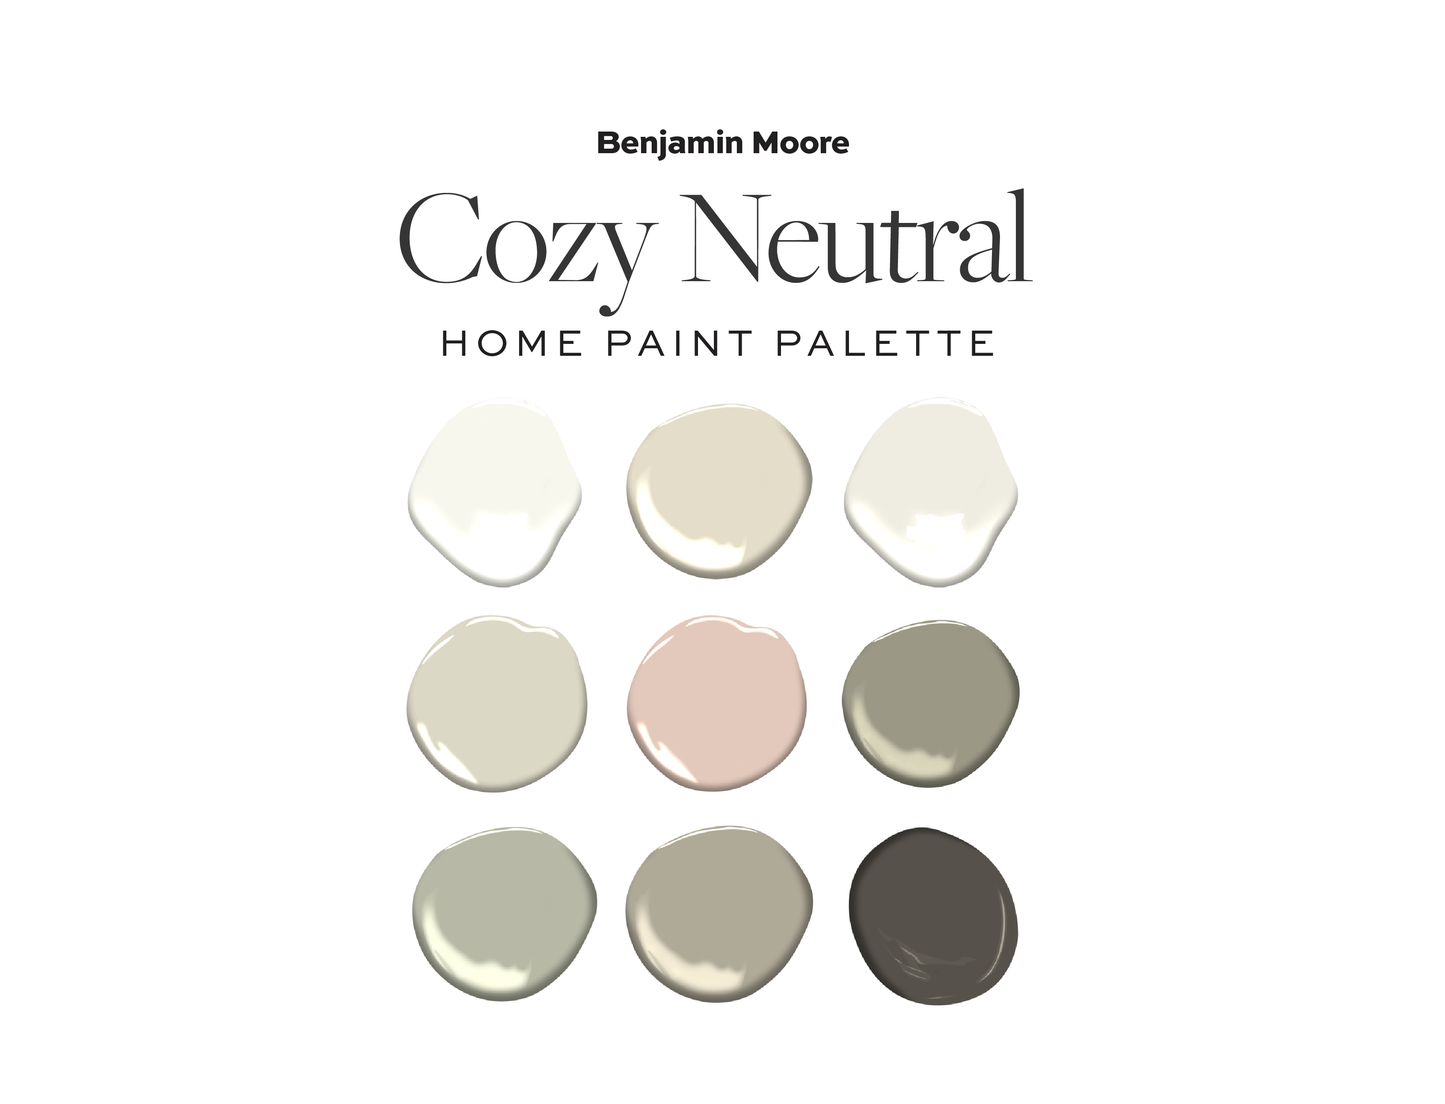 Benjamin Moore Cozy Neutral Home Paint Color Palette